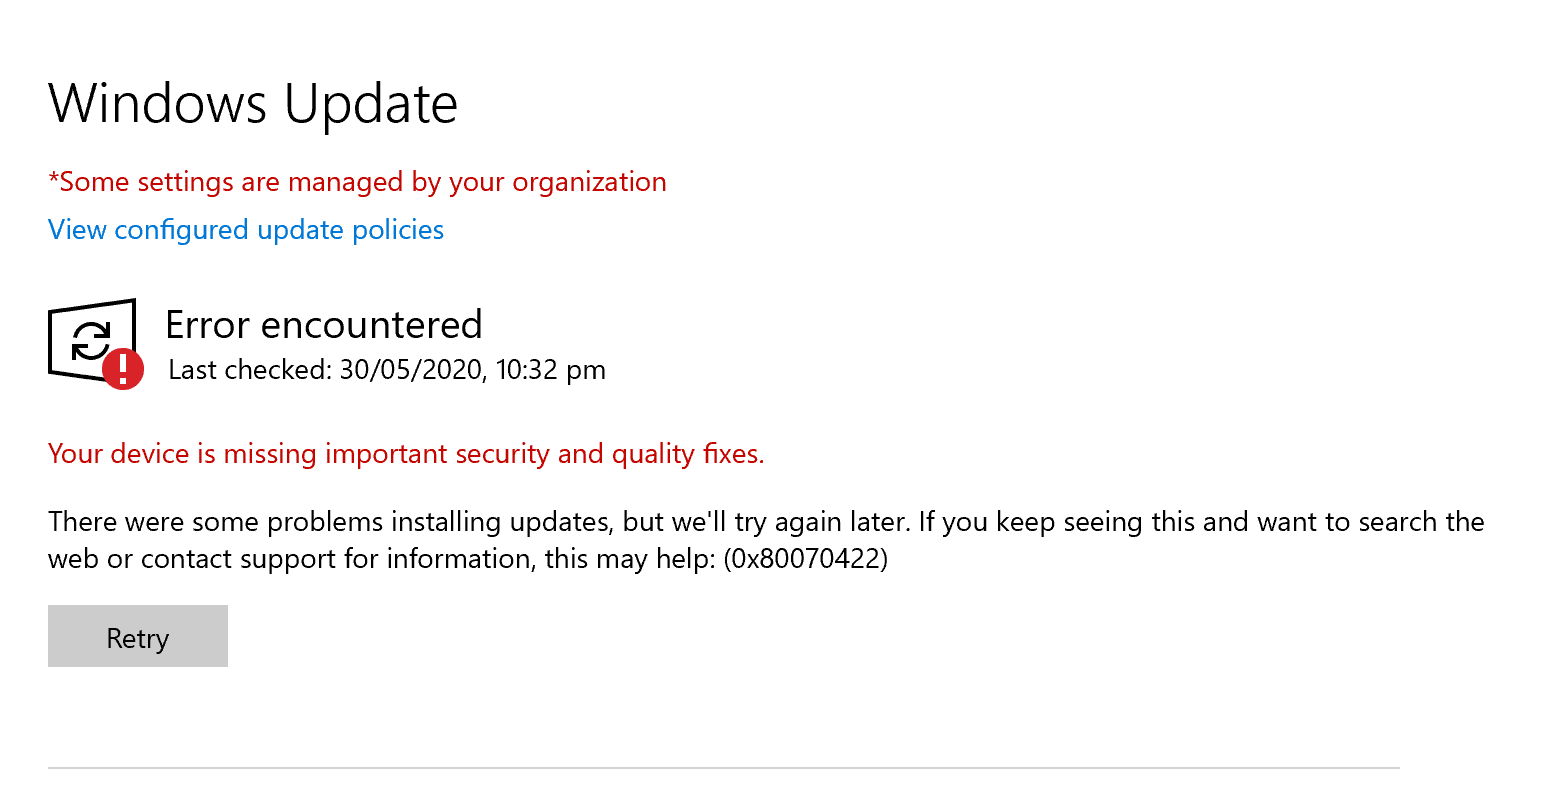 Windows Update problem bcc8f9ff-920e-482c-9521-c70eb25495a4?upload=true.png